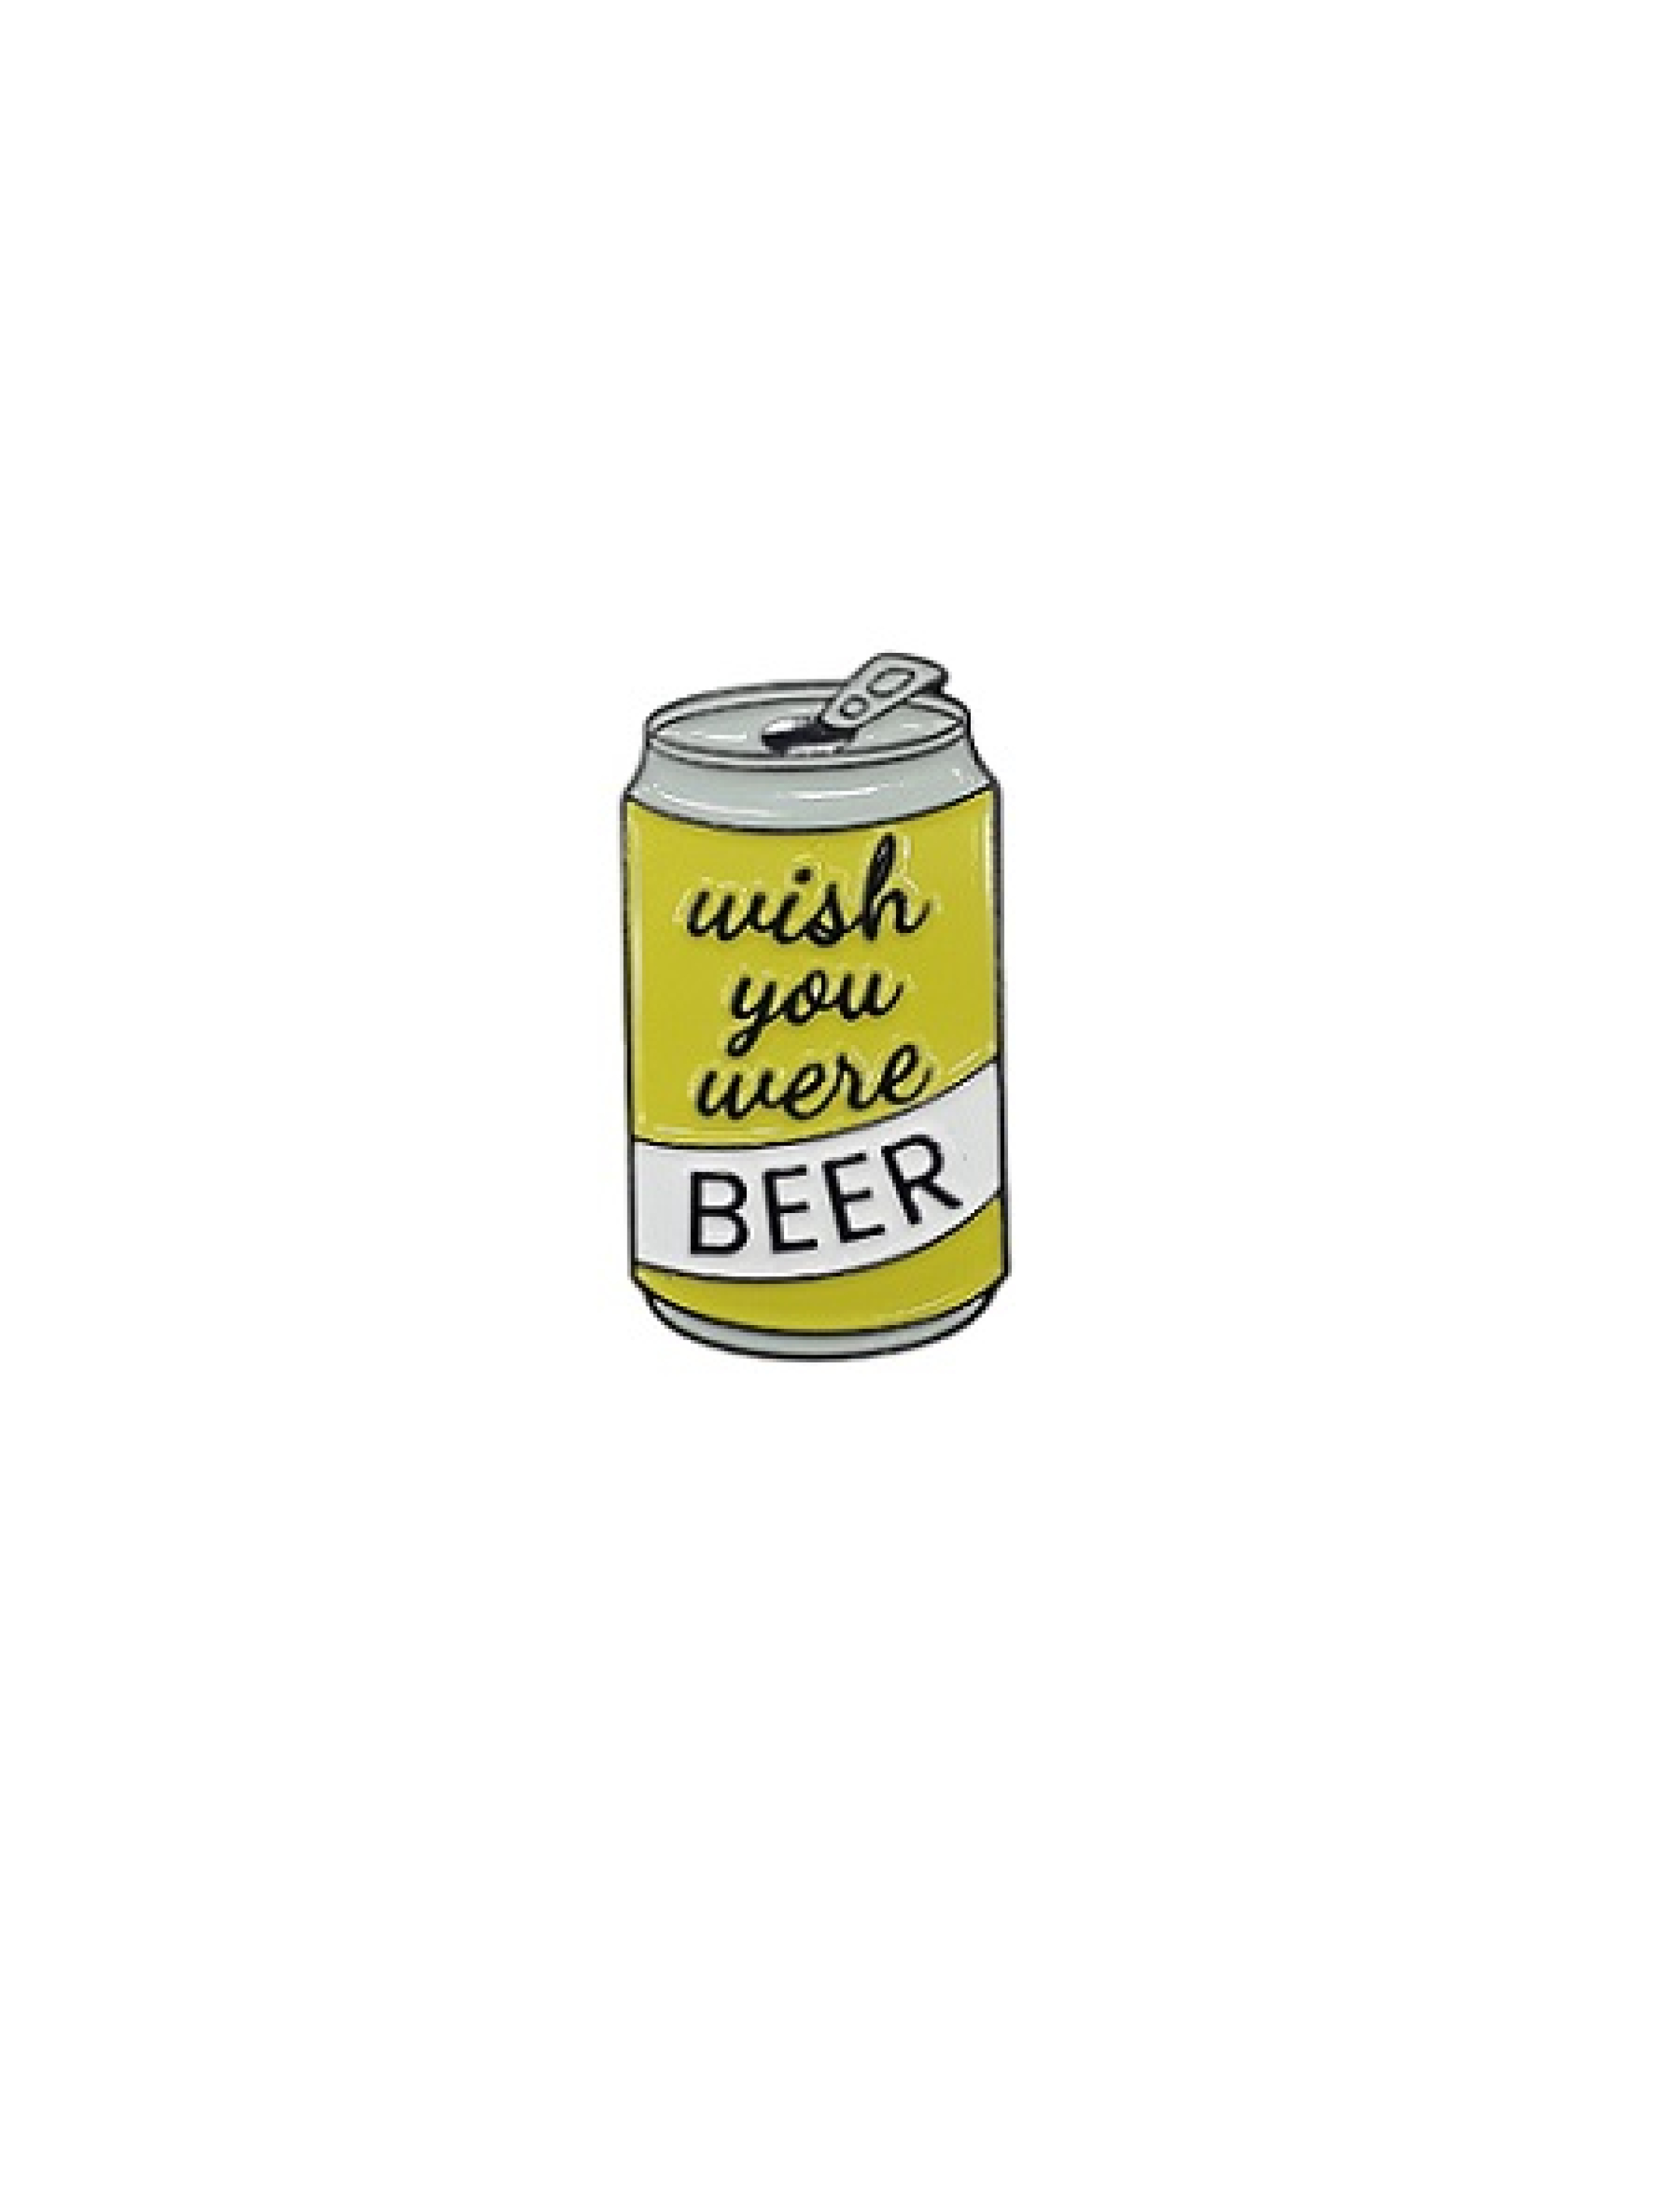 Wish you were Beer